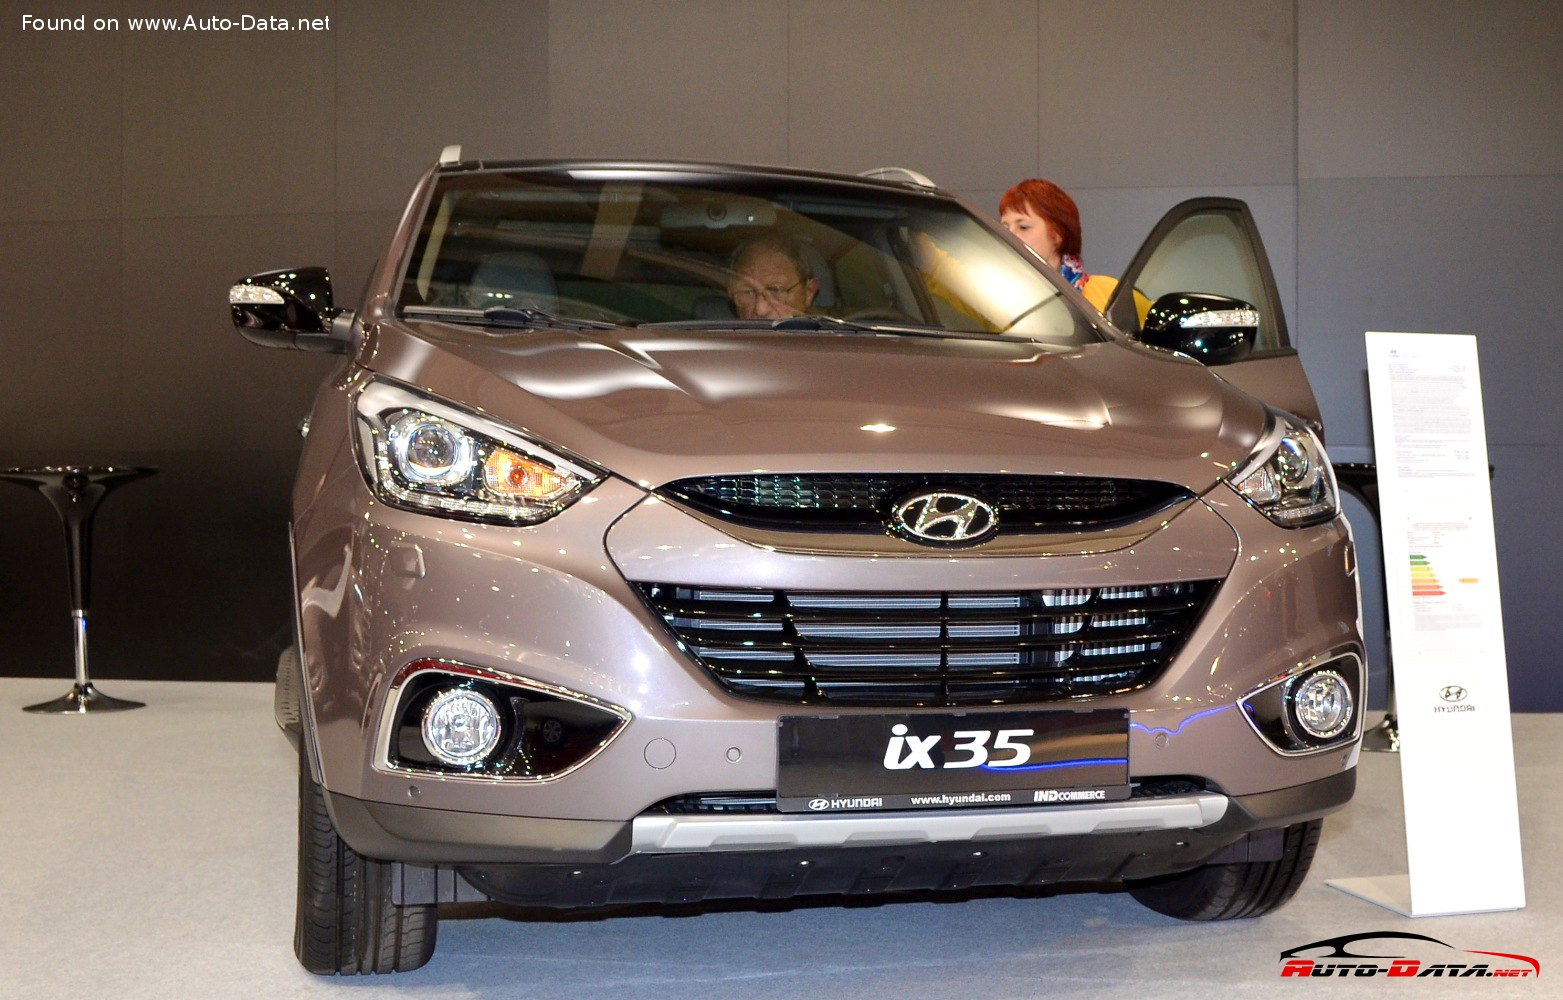 2013 Hyundai ix35 (Facelift 2013) 2.0 CRDi (184 CV) 4X4